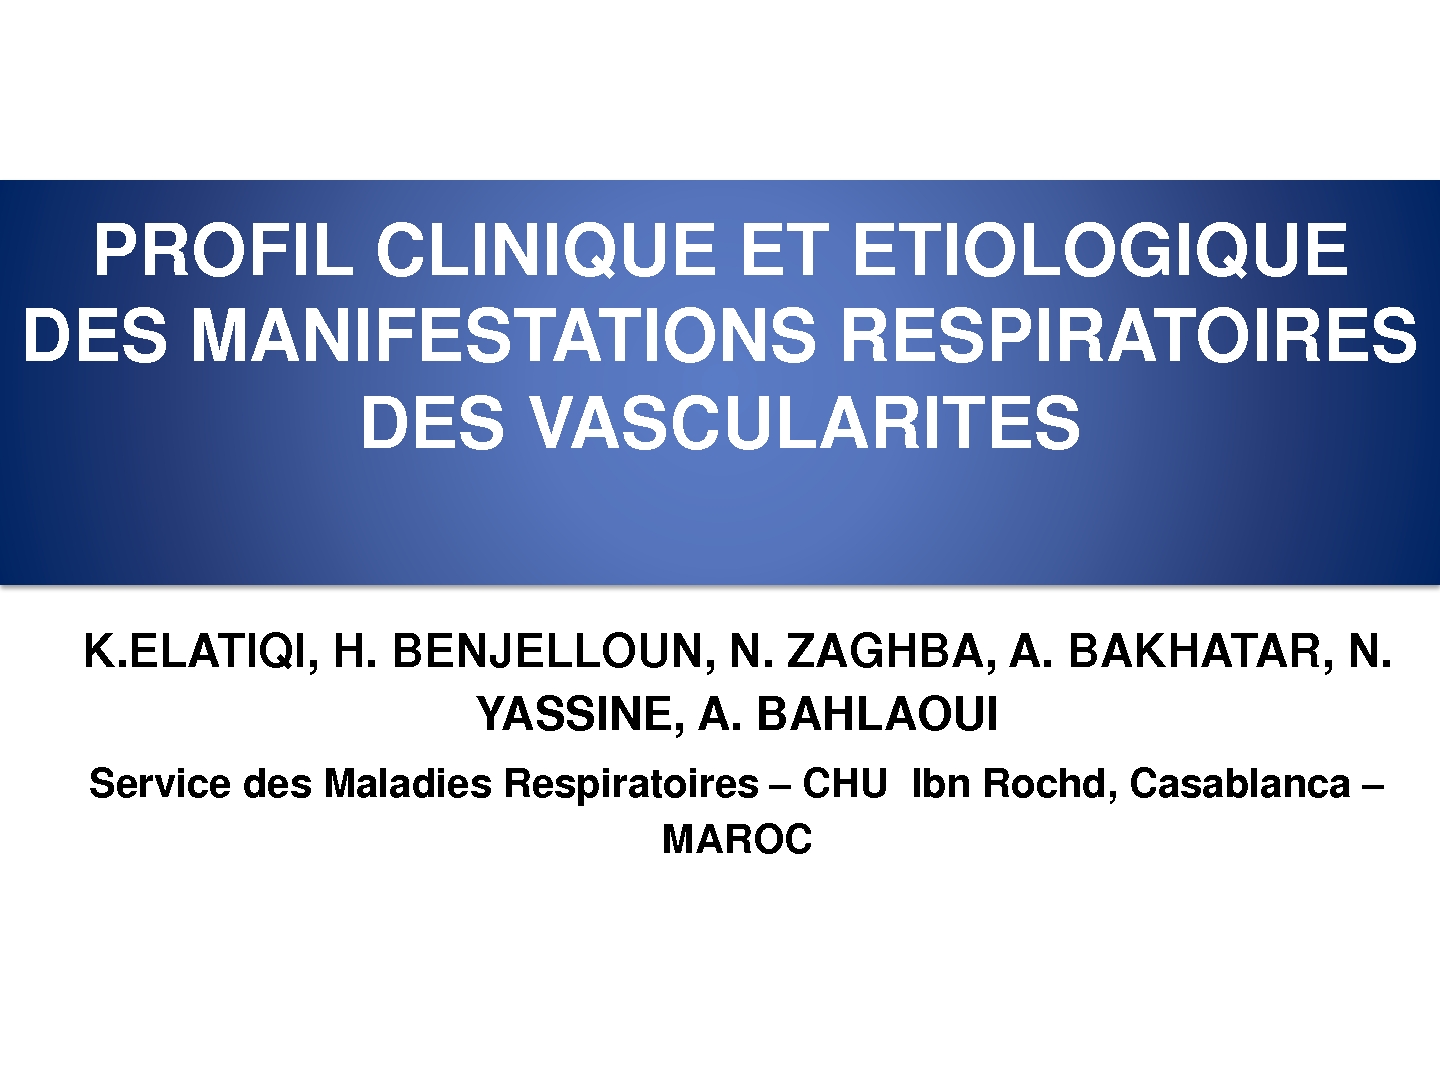 Profil clinique et étiologique de l'atteinte thoracique des vascularites. K. ELATIQ